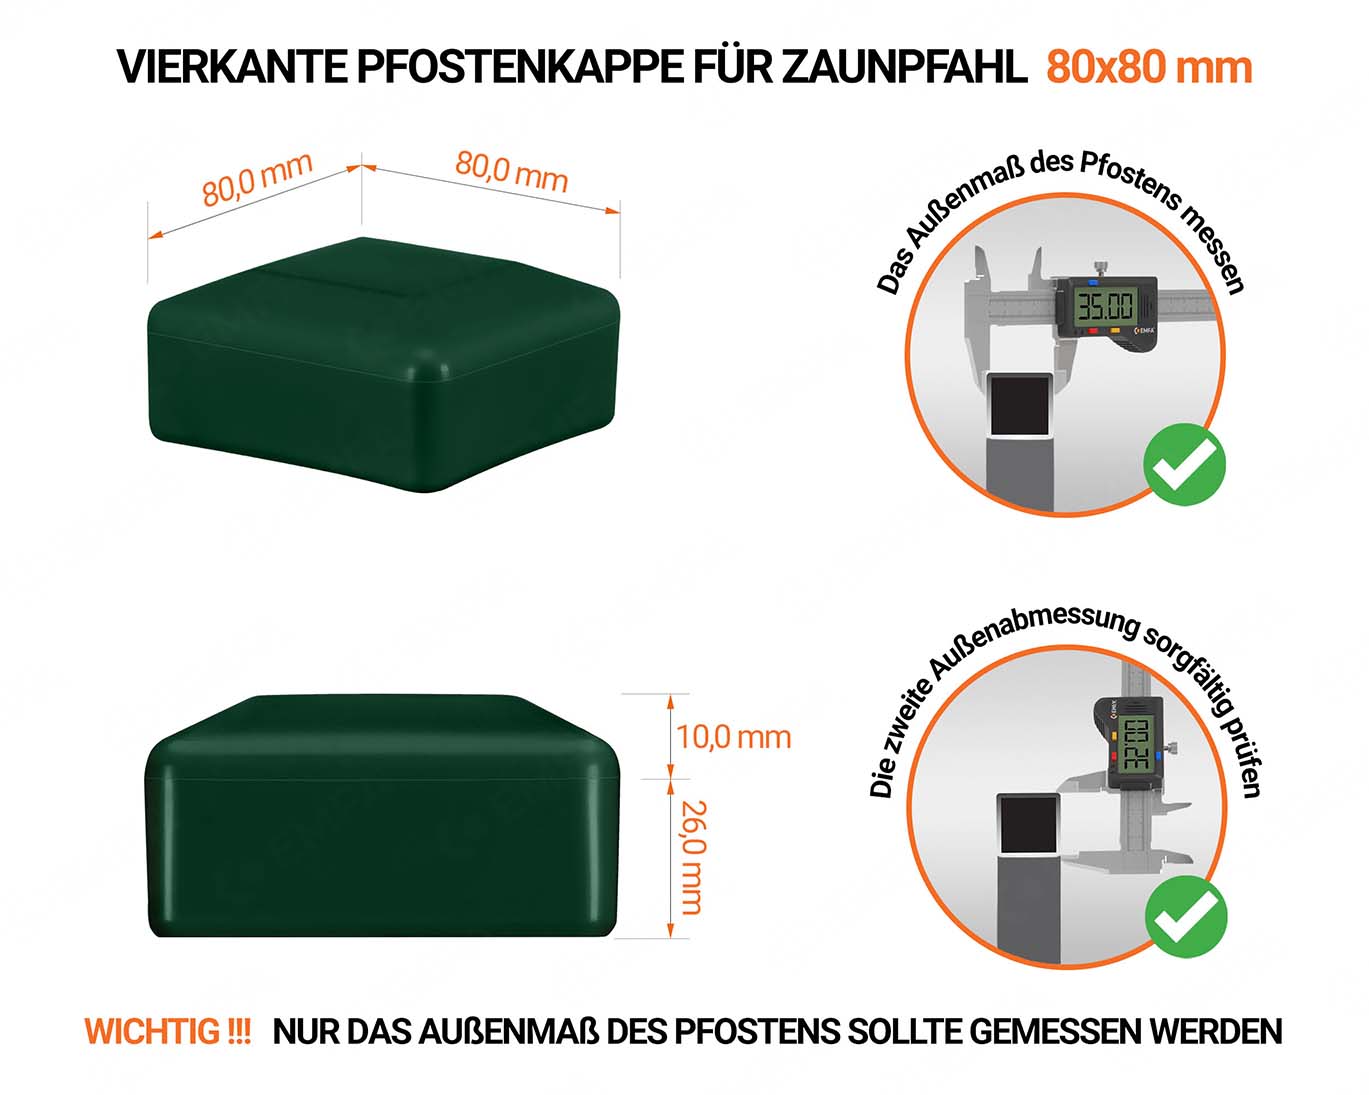 Grüne Pfostenkappen vierkant für Pfostenmaße 80x80 mm  mit technischen Abmessungen und Anleitung für korrekte Messung